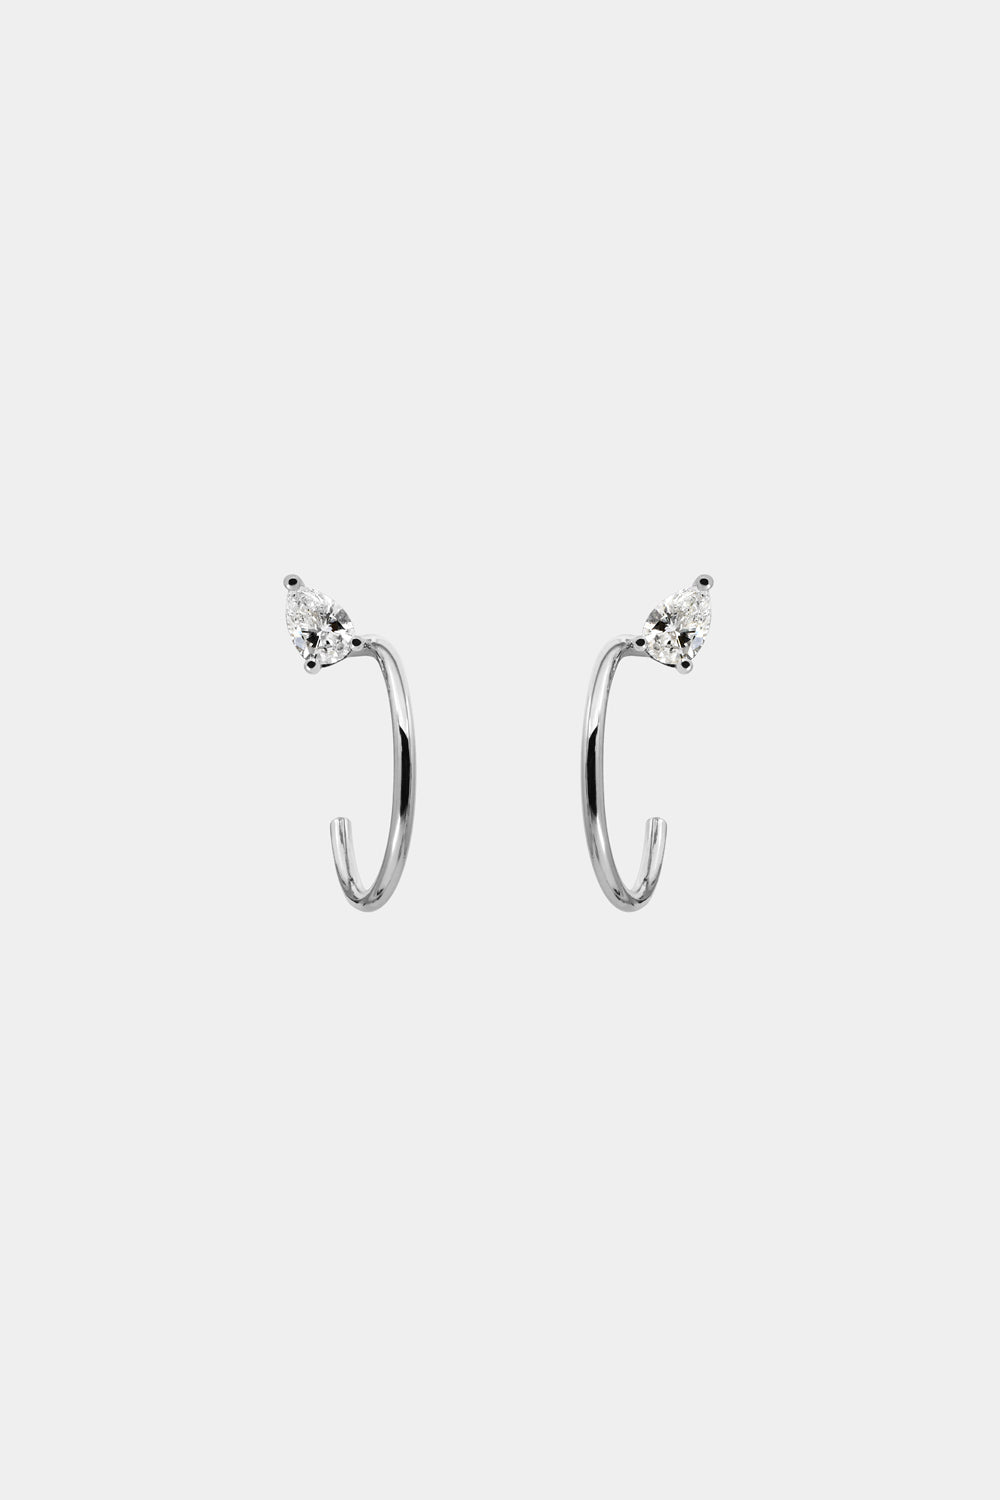 Odette White  Gold Hoop Earrings Buy Odette White  Gold Hoop Earrings  Online at Best Price in India  Nykaa